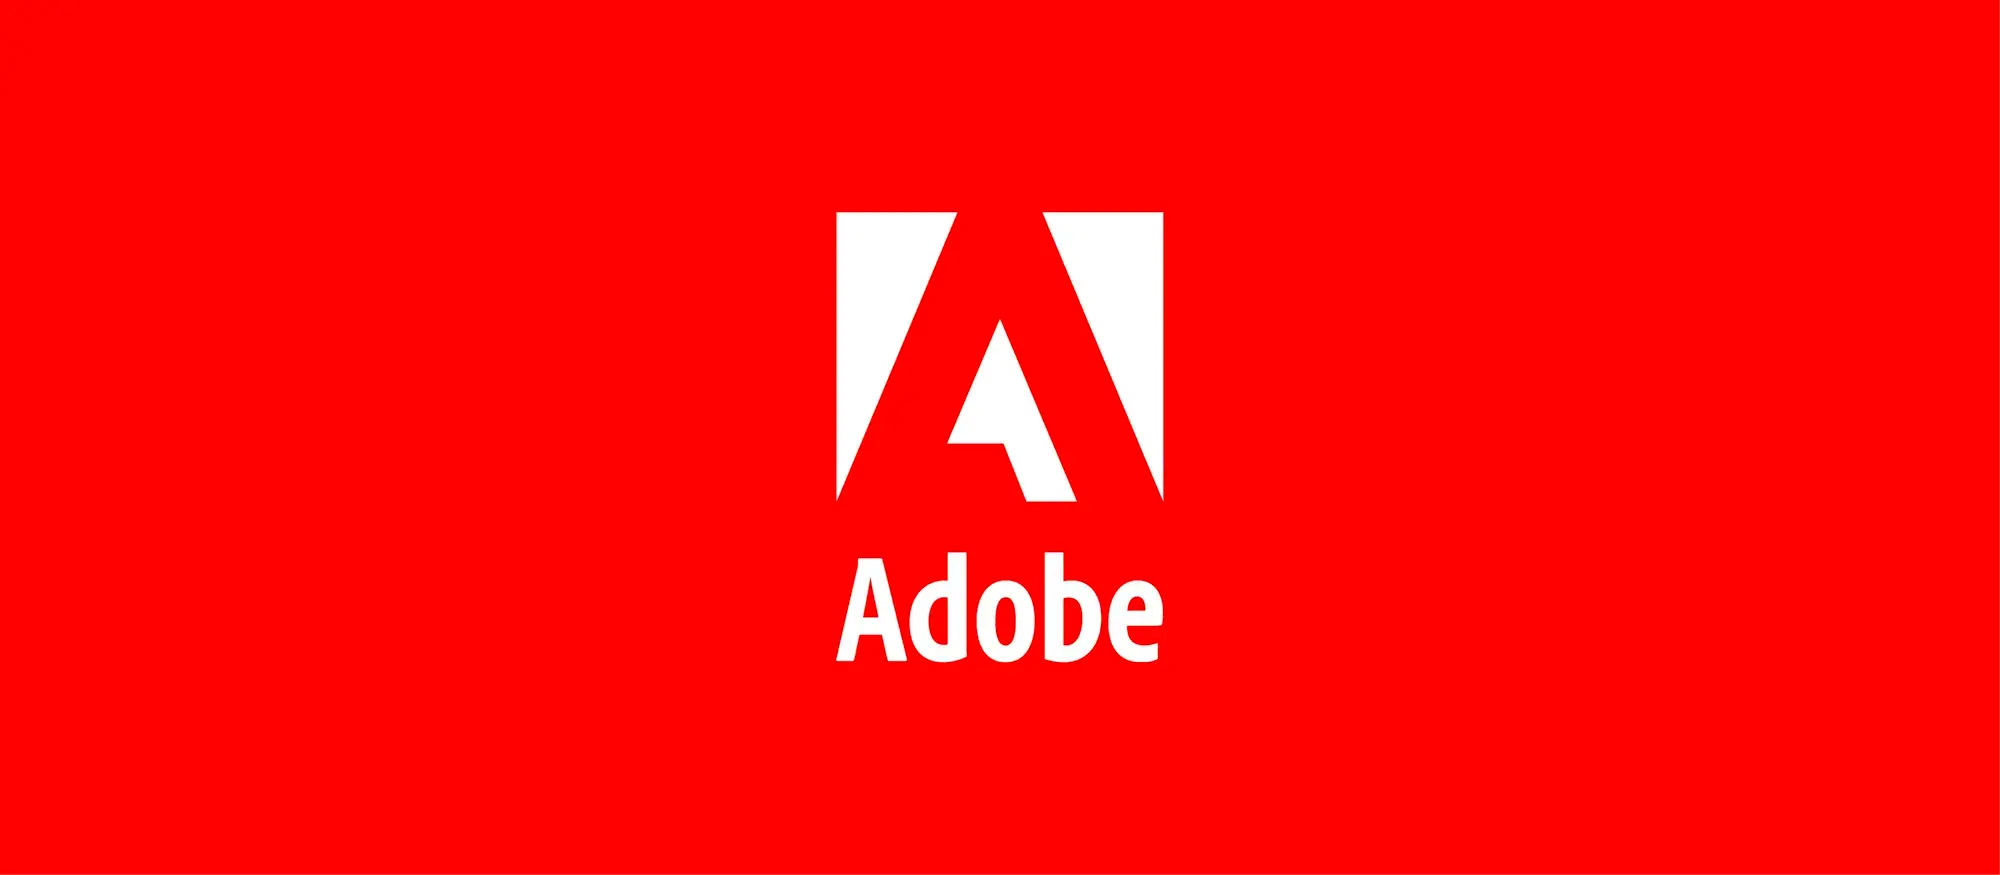 Adobe utiliza inteligencia artificial para separar las pistas de audio